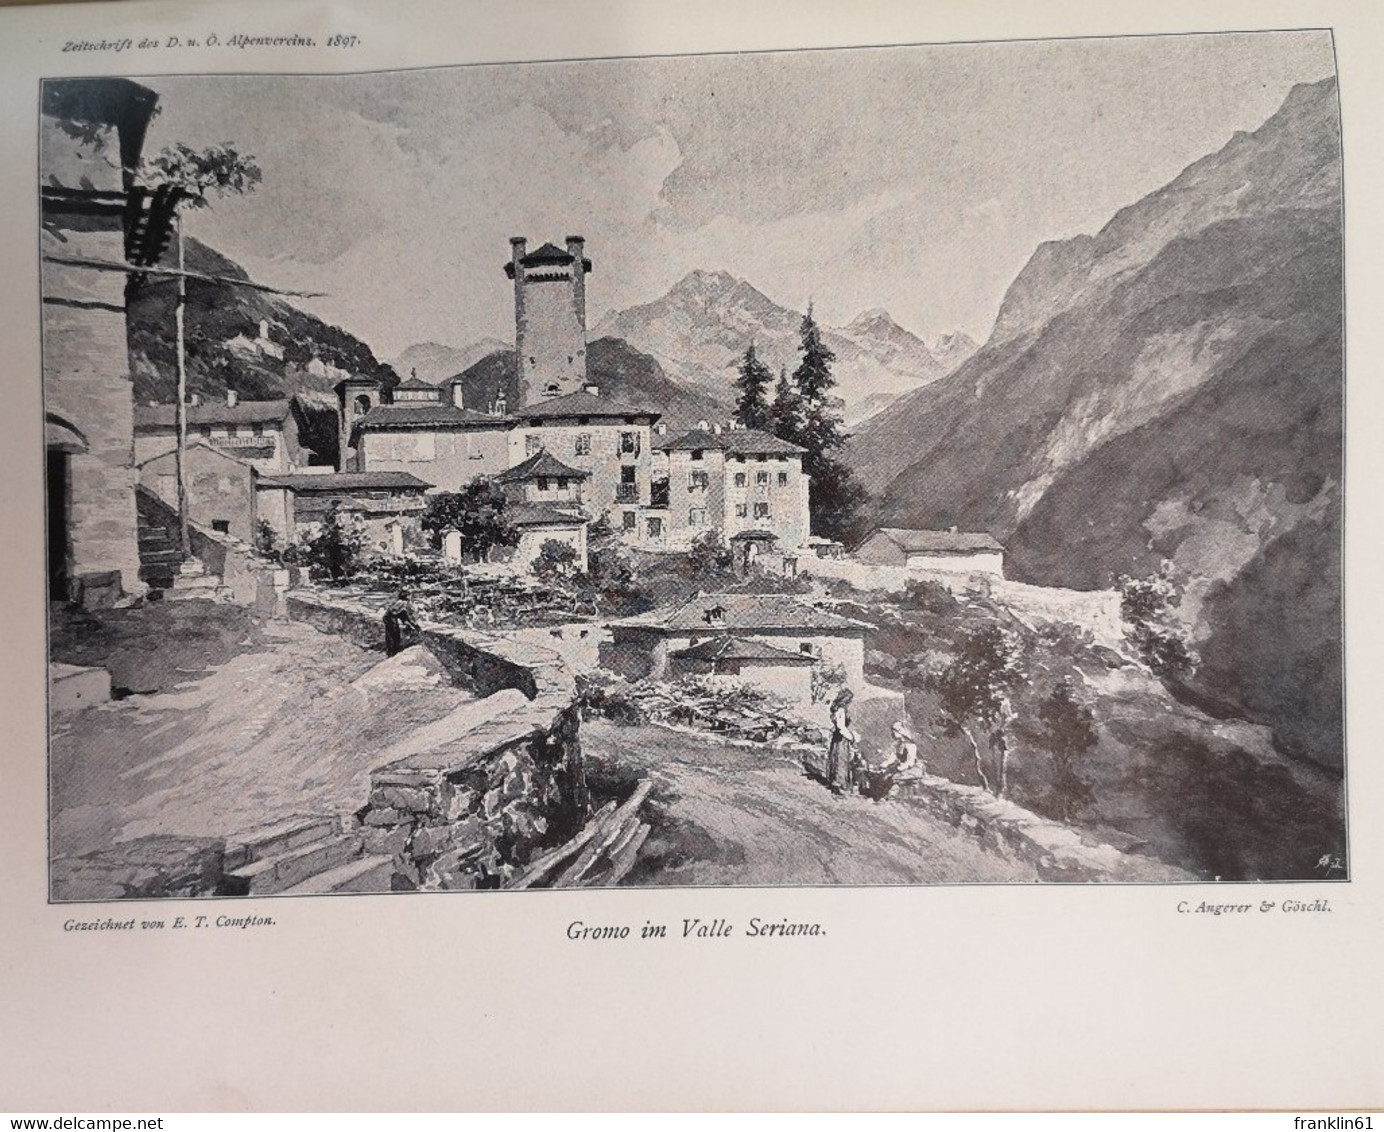 Zeitschrift des deutschen und österreichischen Alpenvereins. Jahrgang 1897. Band XXVIII.